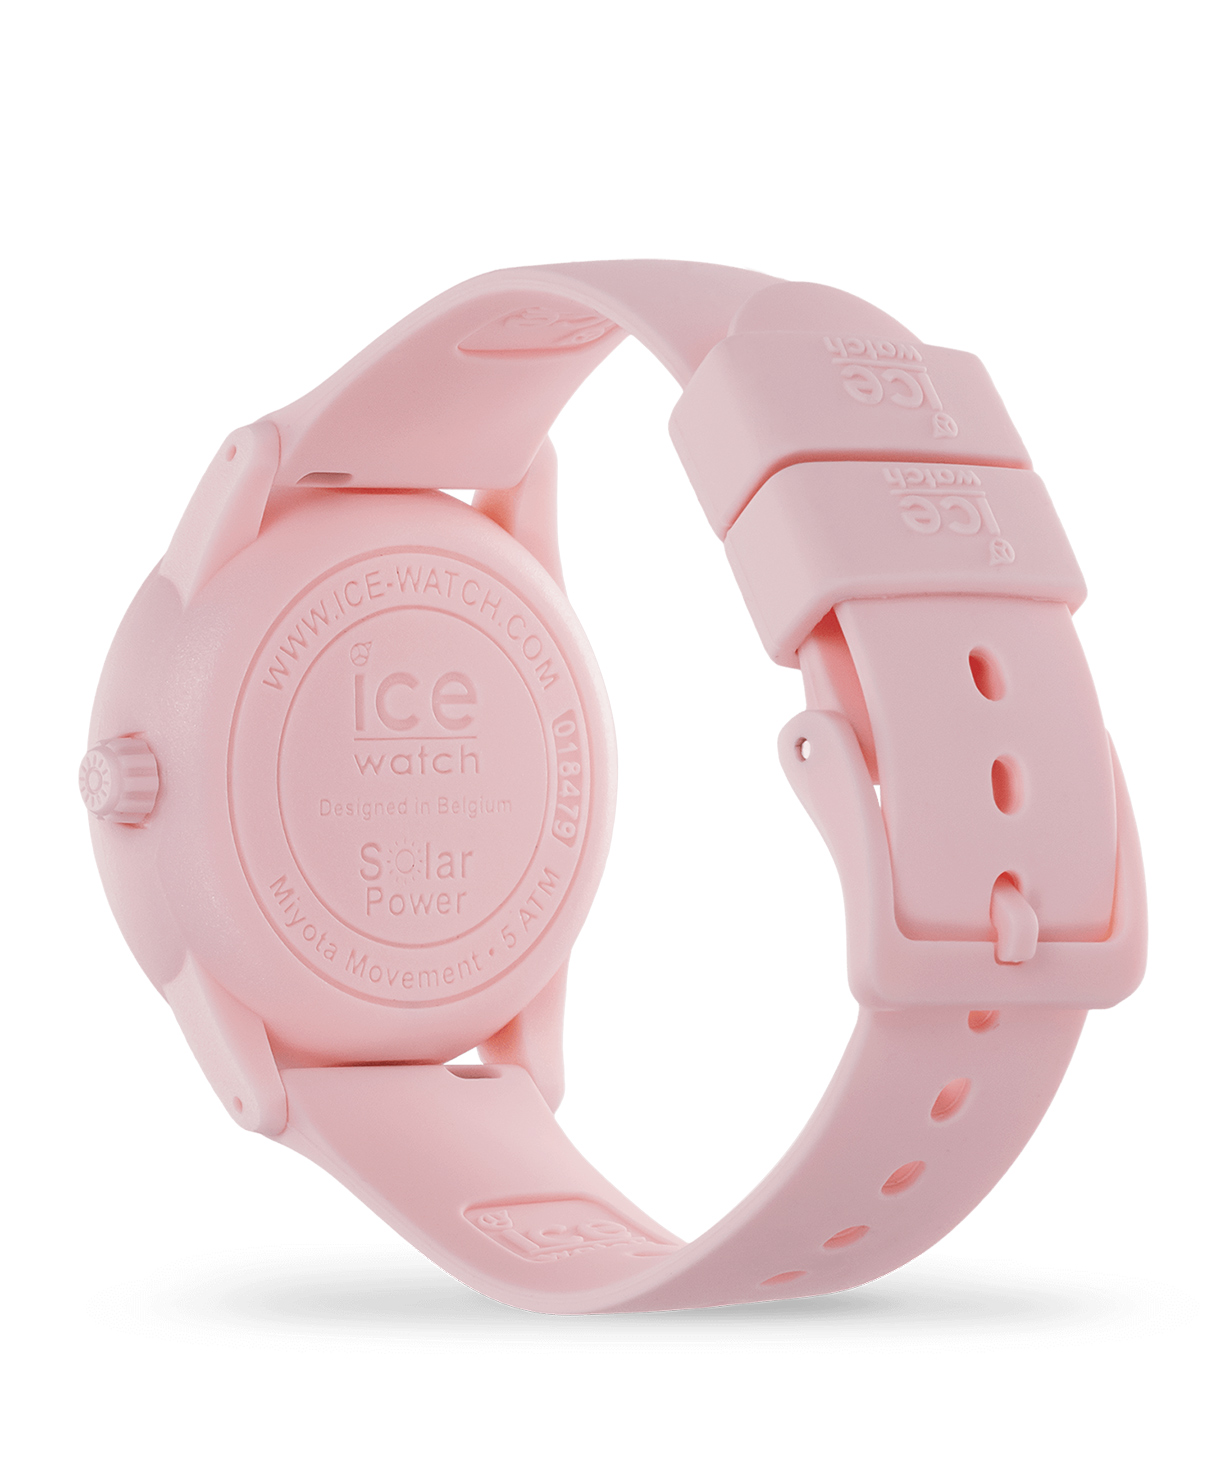 Ժամացույց «Ice-Watch» ICE solar power - Pink lady